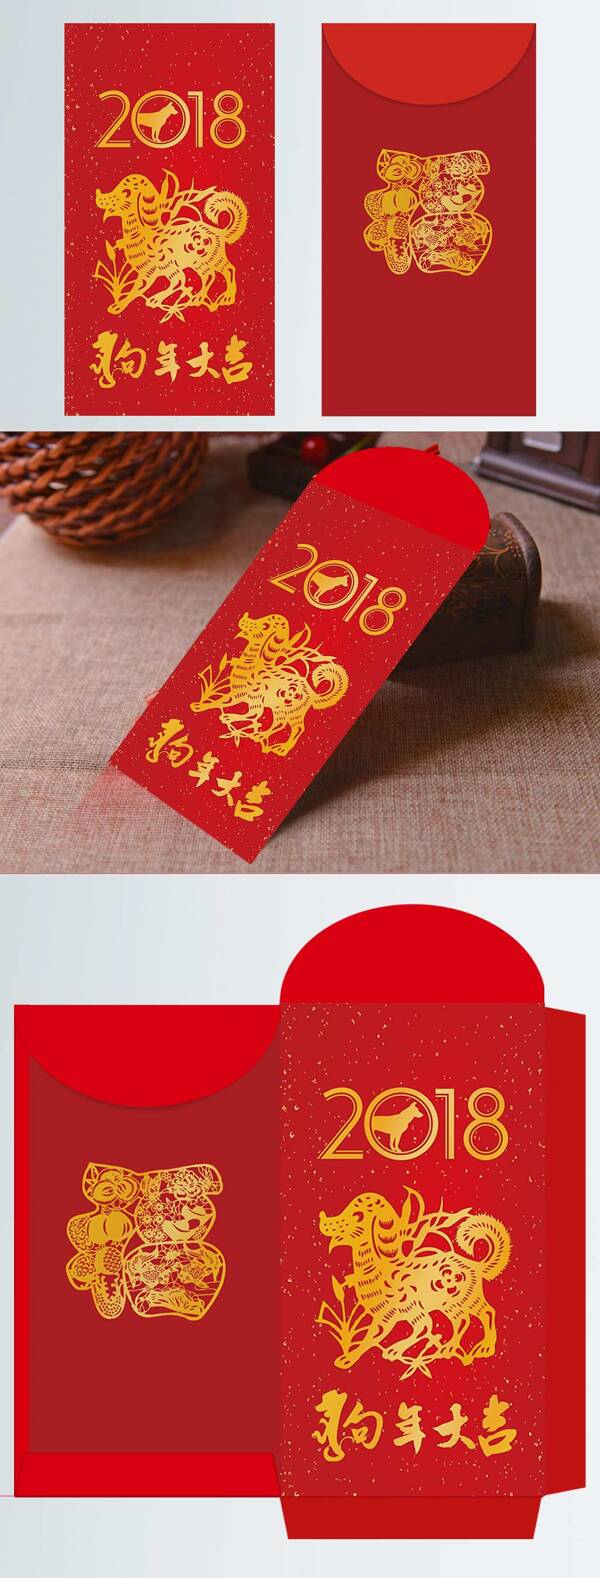 2018年狗年剪纸风格红包设计